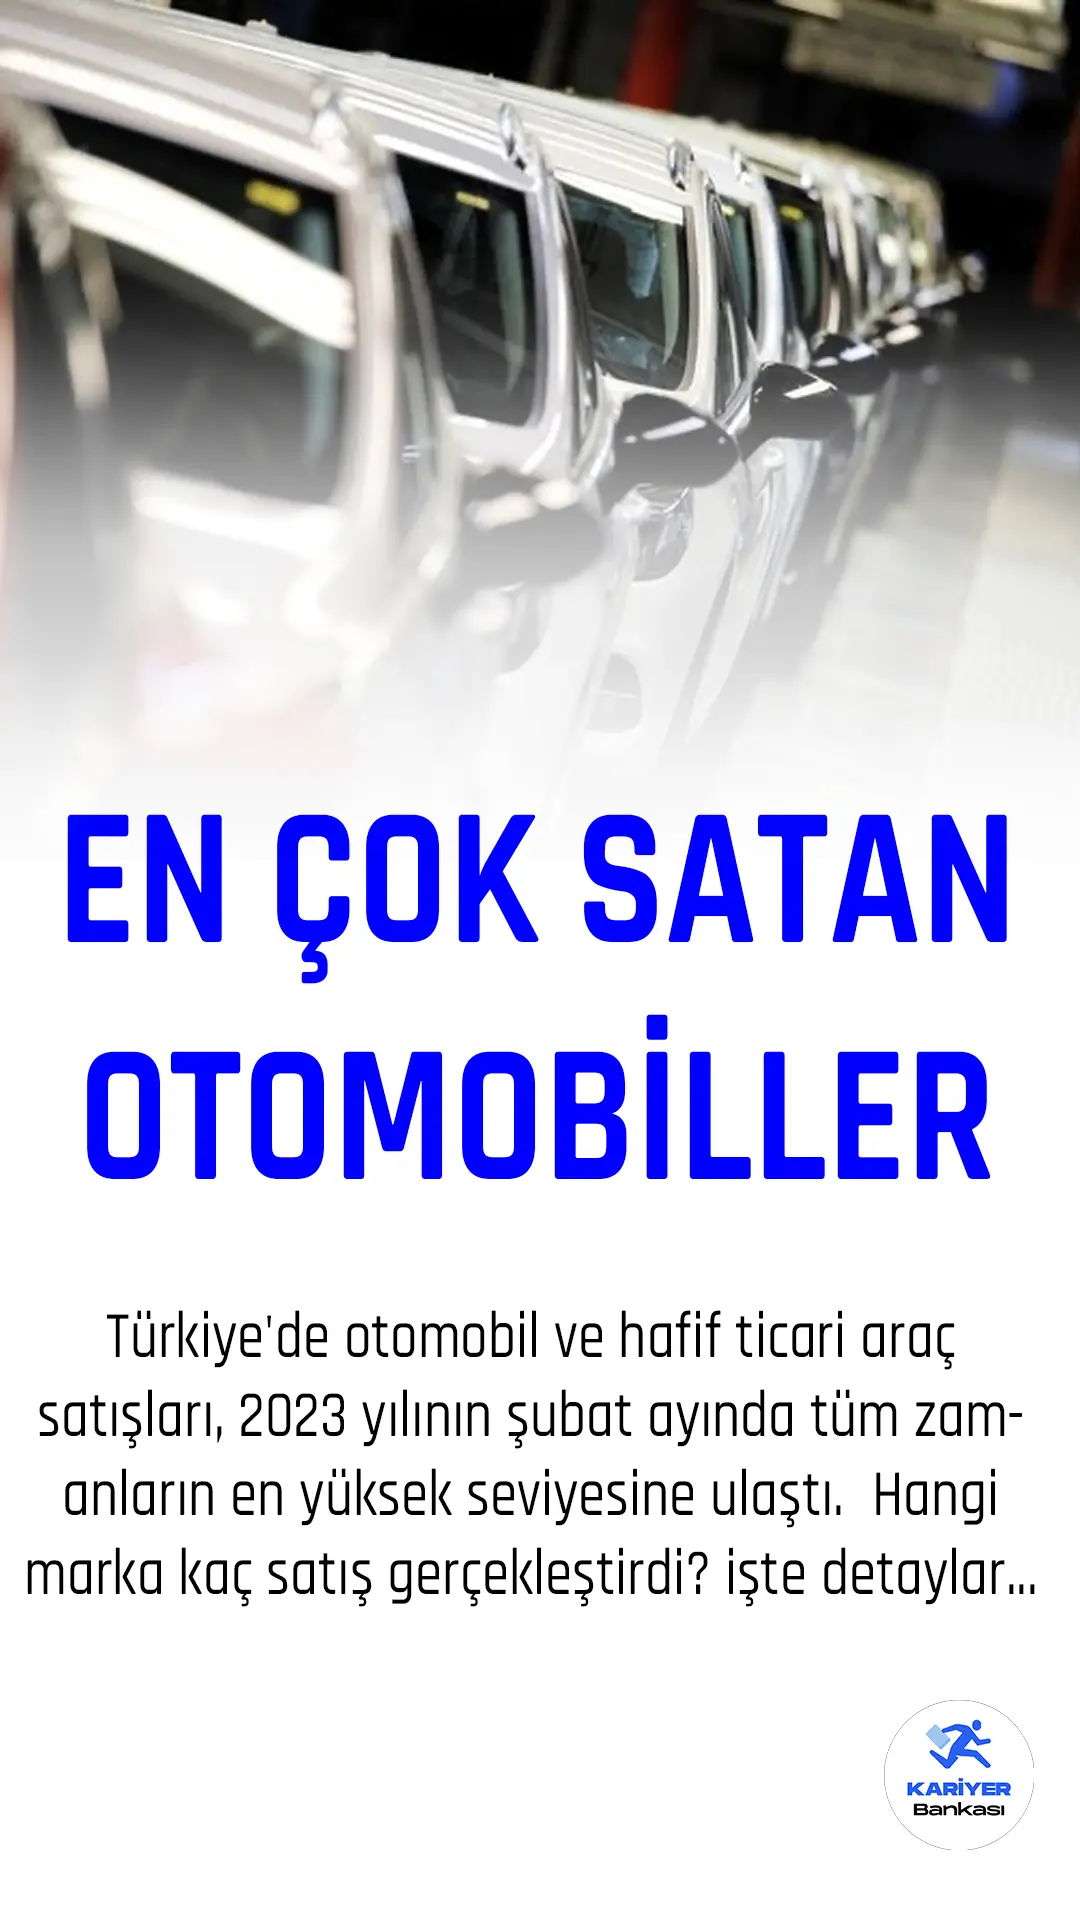 Türkiye'de en çok satan otomobiller belli oldu.